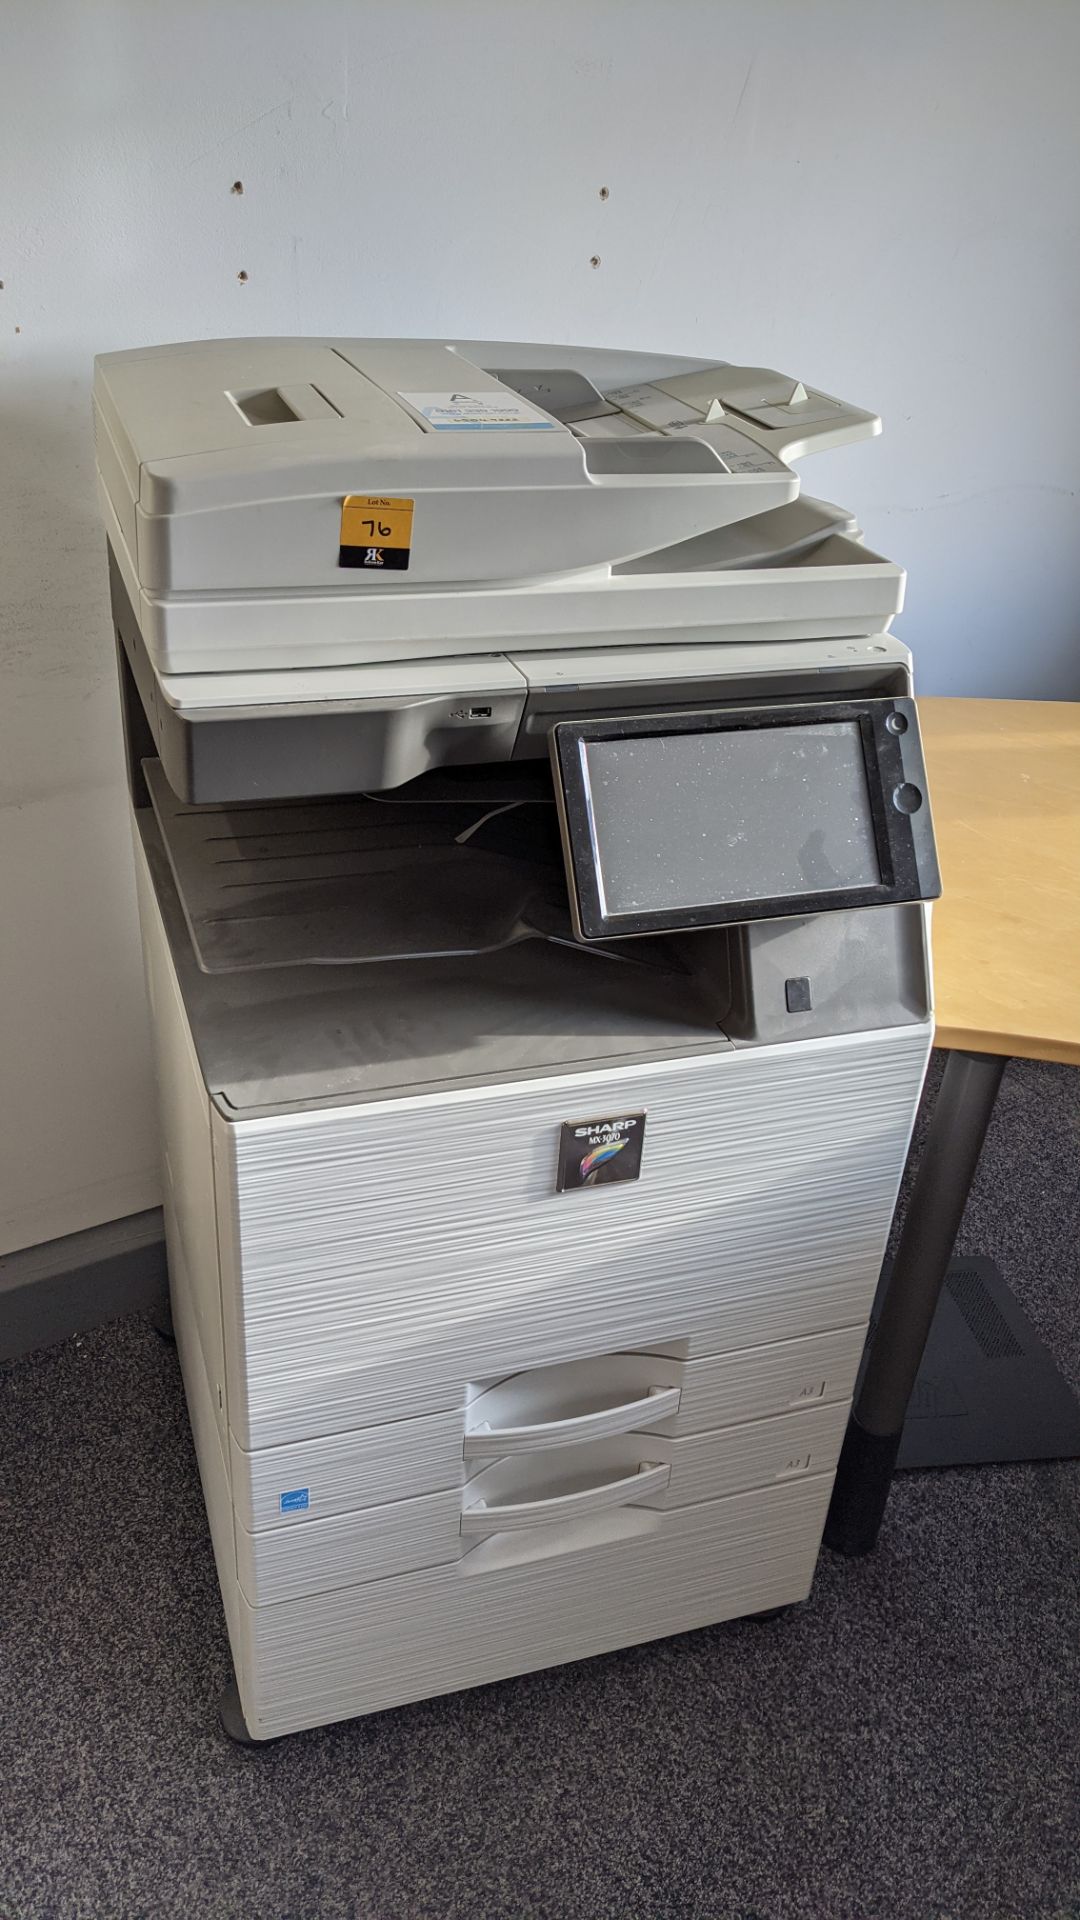 Sharp MX3070 floor standing copier with multi paper bins, touchscreen control, ADF, etc.